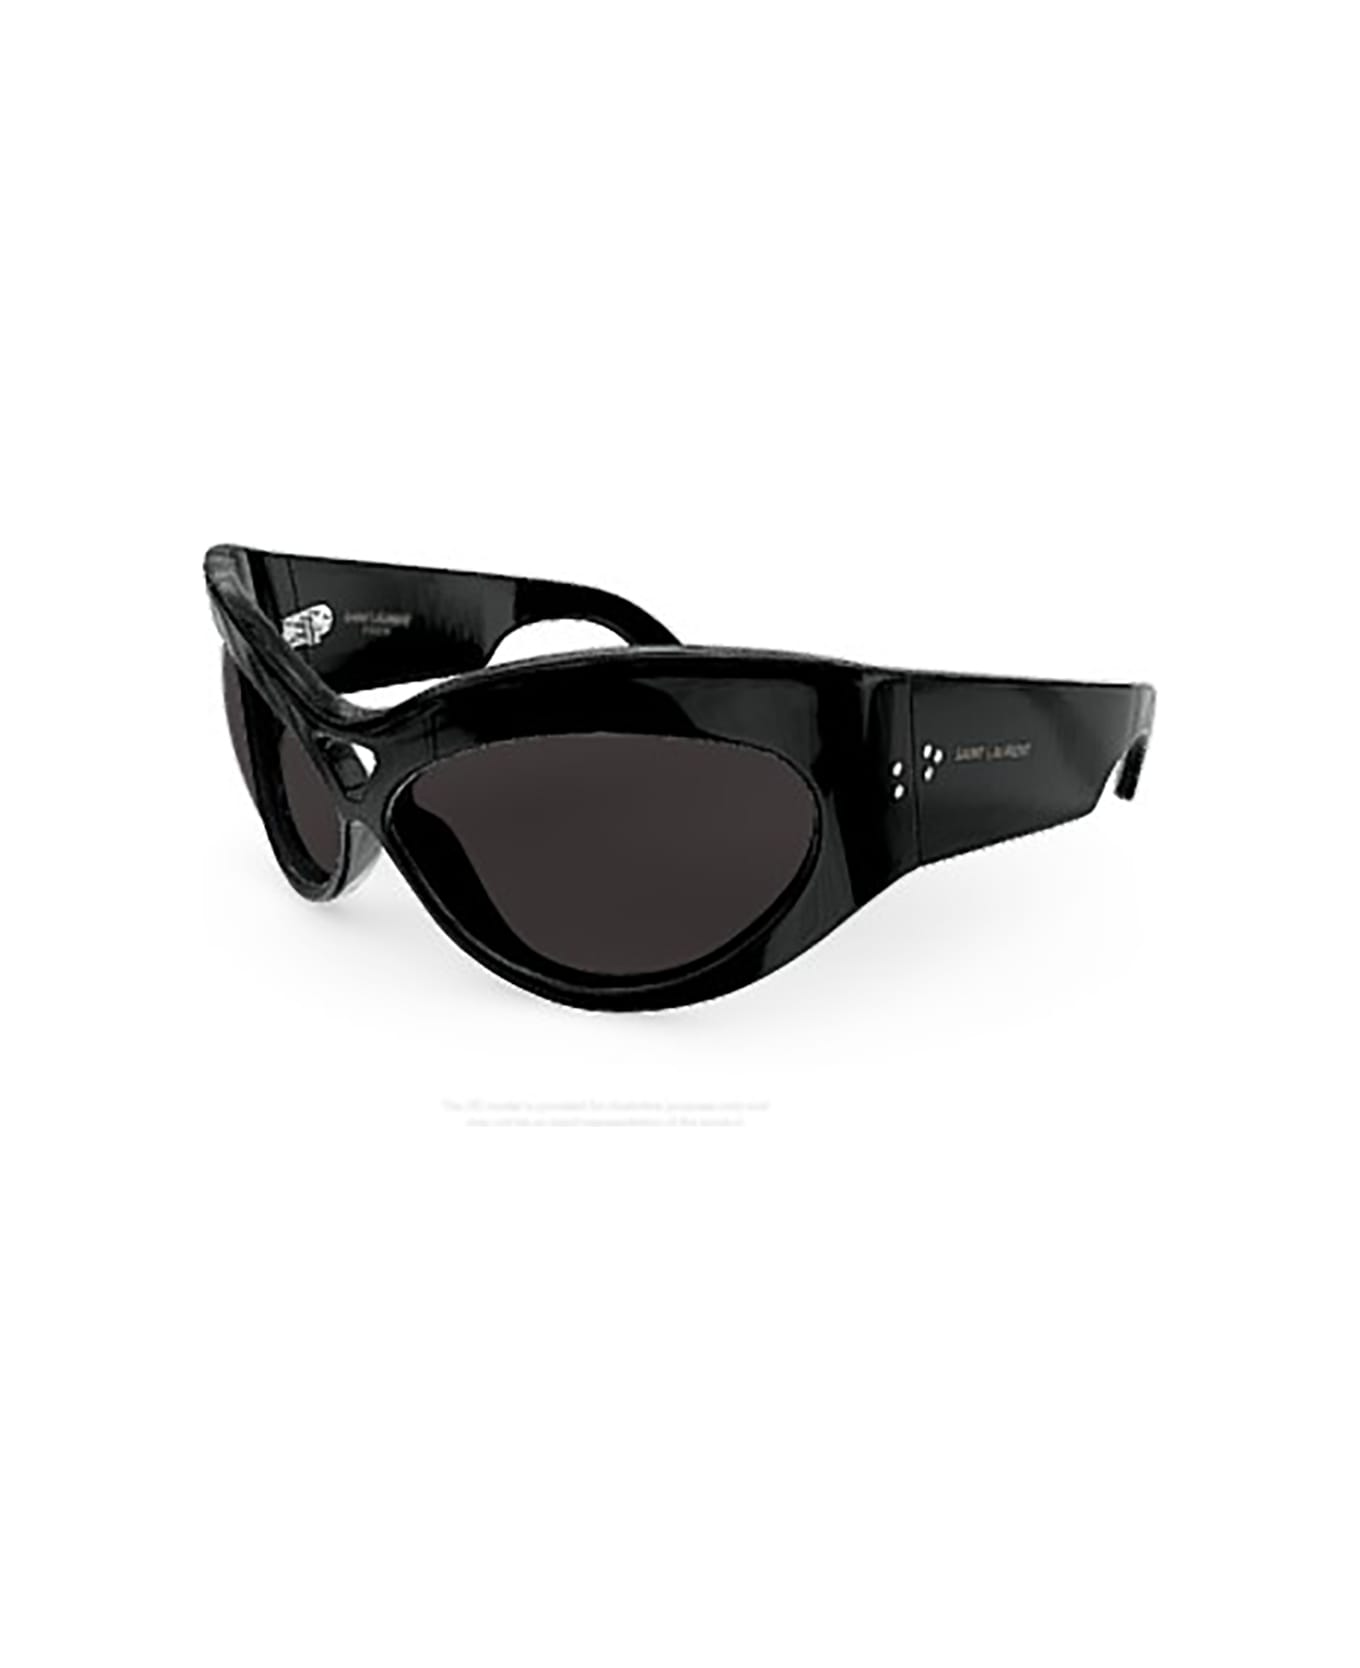 Saint Laurent Eyewear SL 73 Sunglasses - Black Black Black